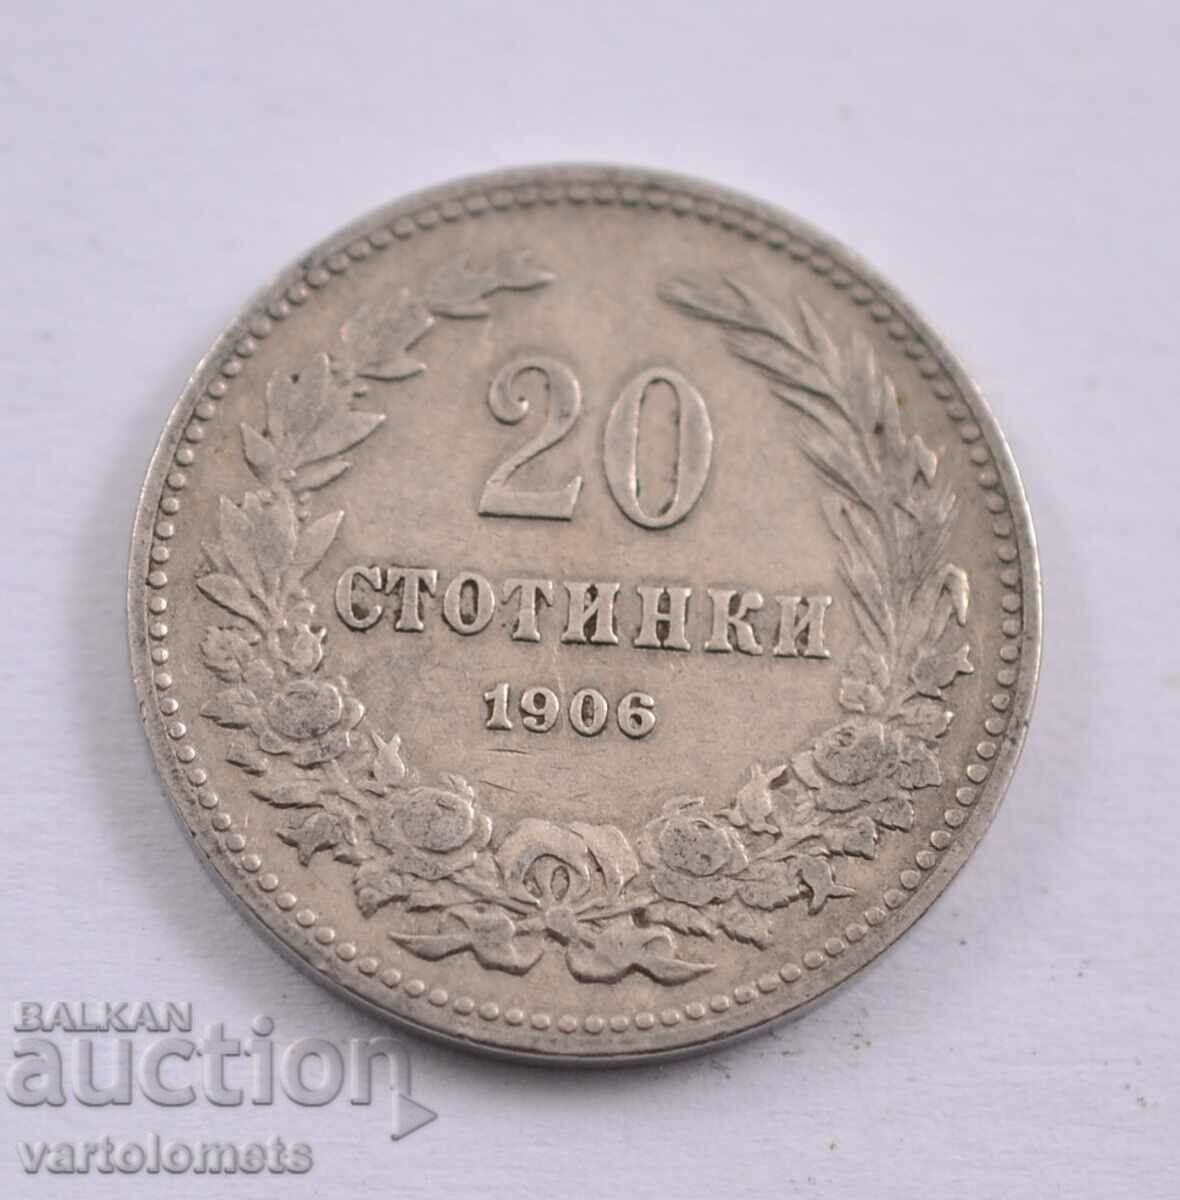 20 stotinki 1906 - Bulgaria